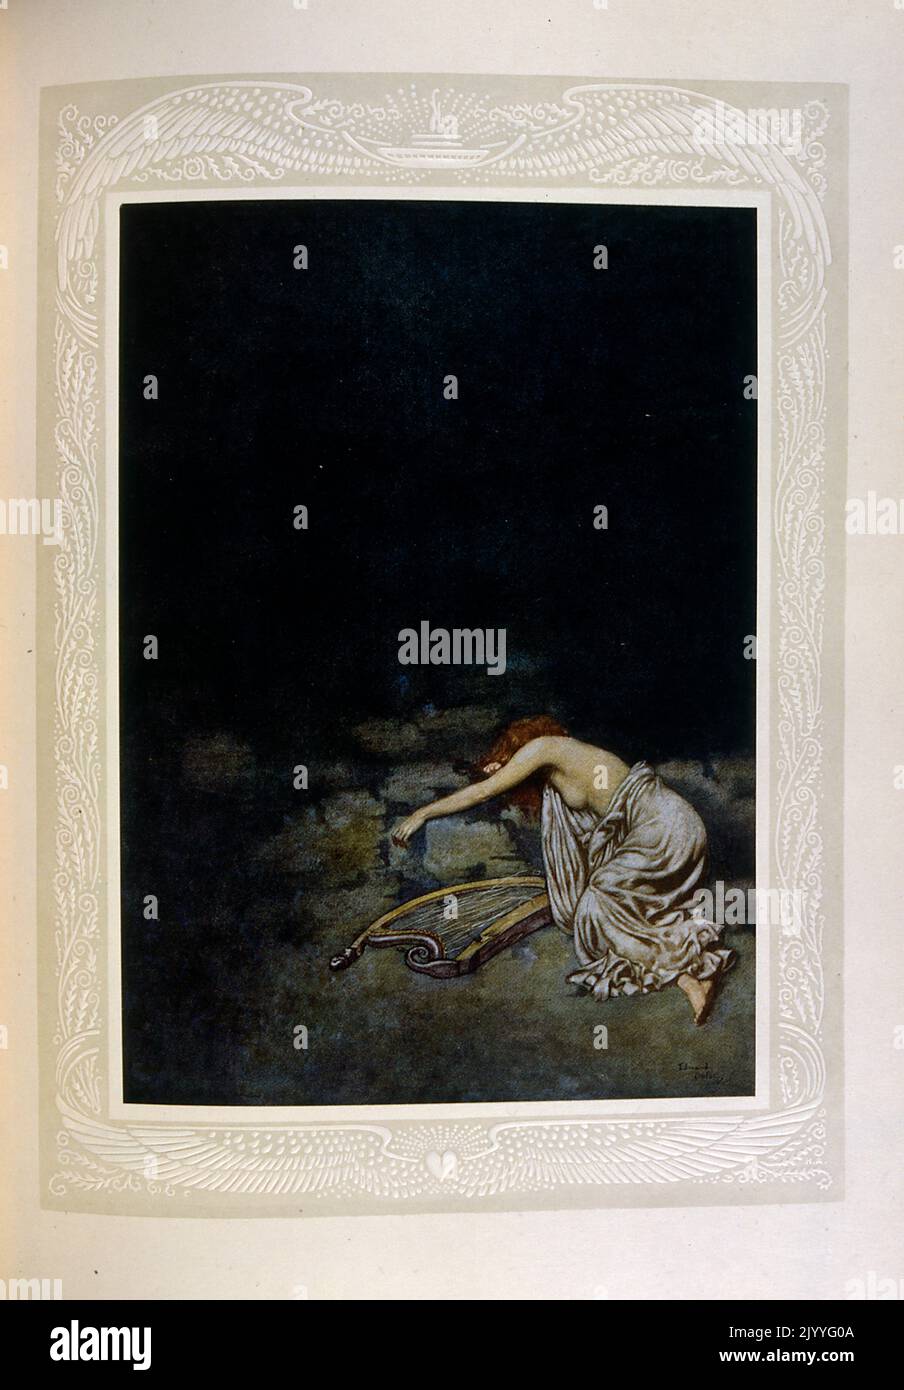 Farbige Illustration einer Dame, die mit einer Harfe auf dem Boden liegt. Illustriert von Edmund Dulac (1882-1953), einem französisch-britischen eingebürgerten Magazin und Buchillustrator. Stockfoto